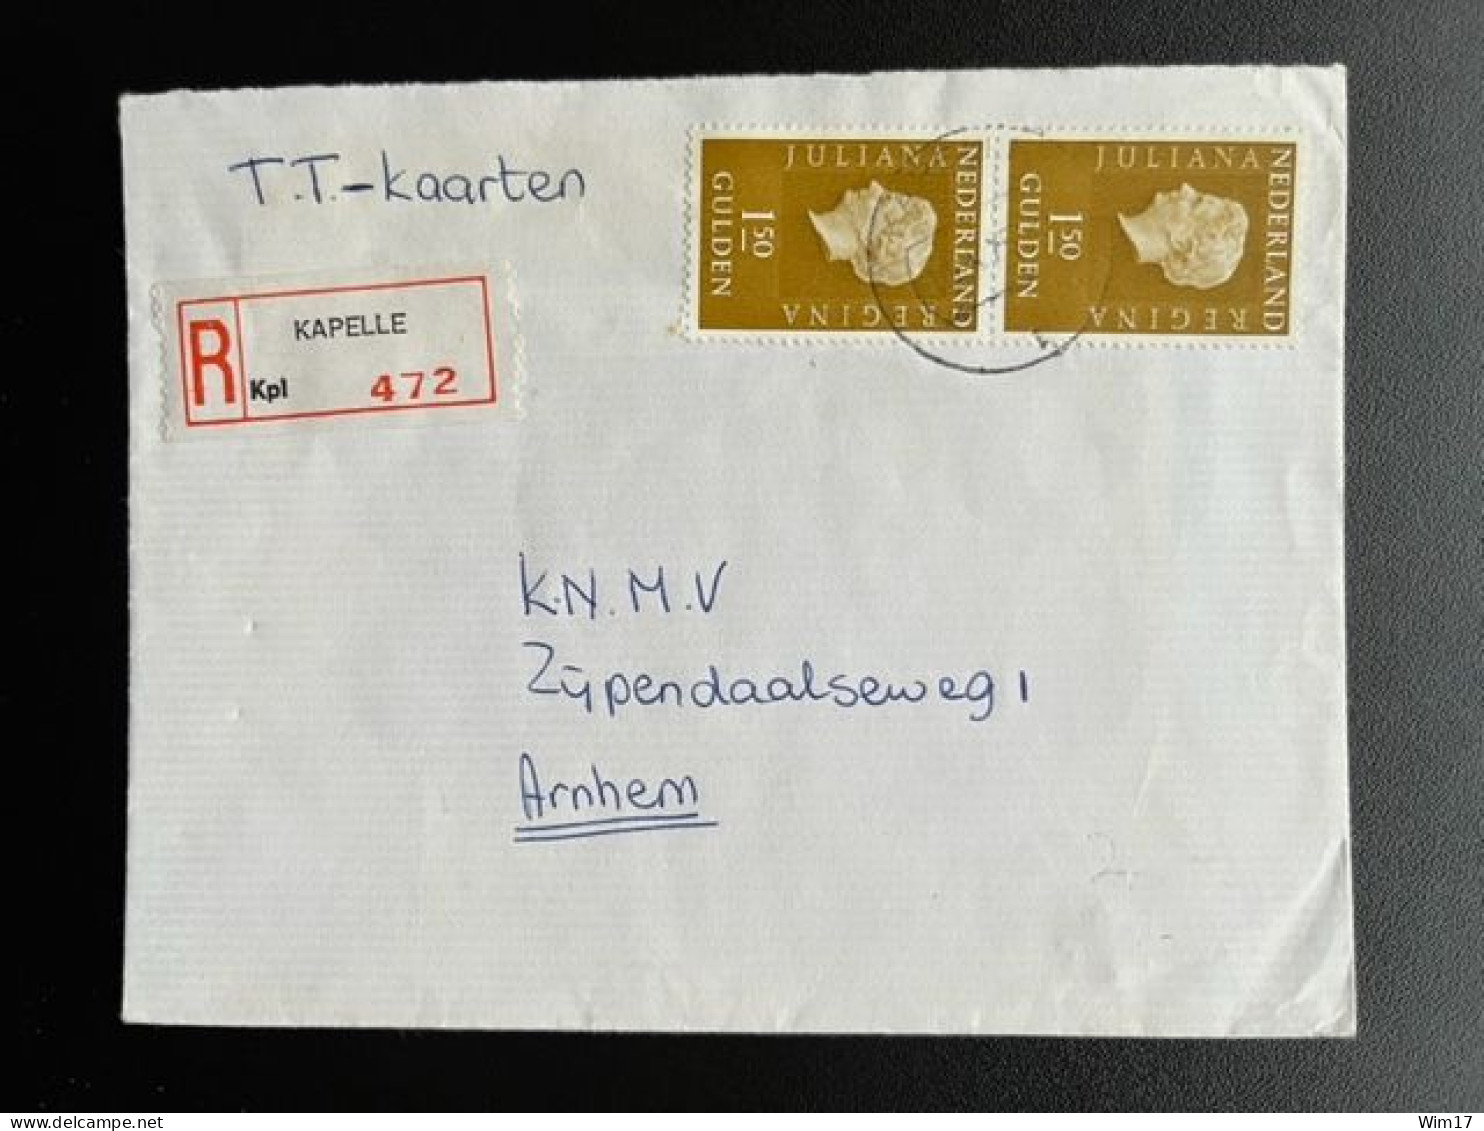 NETHERLANDS 1975 REGISTERED LETTER KAPELLE TO ARNHEM 16-02-1975 NEDERLAND AANGETEKEND - Lettres & Documents